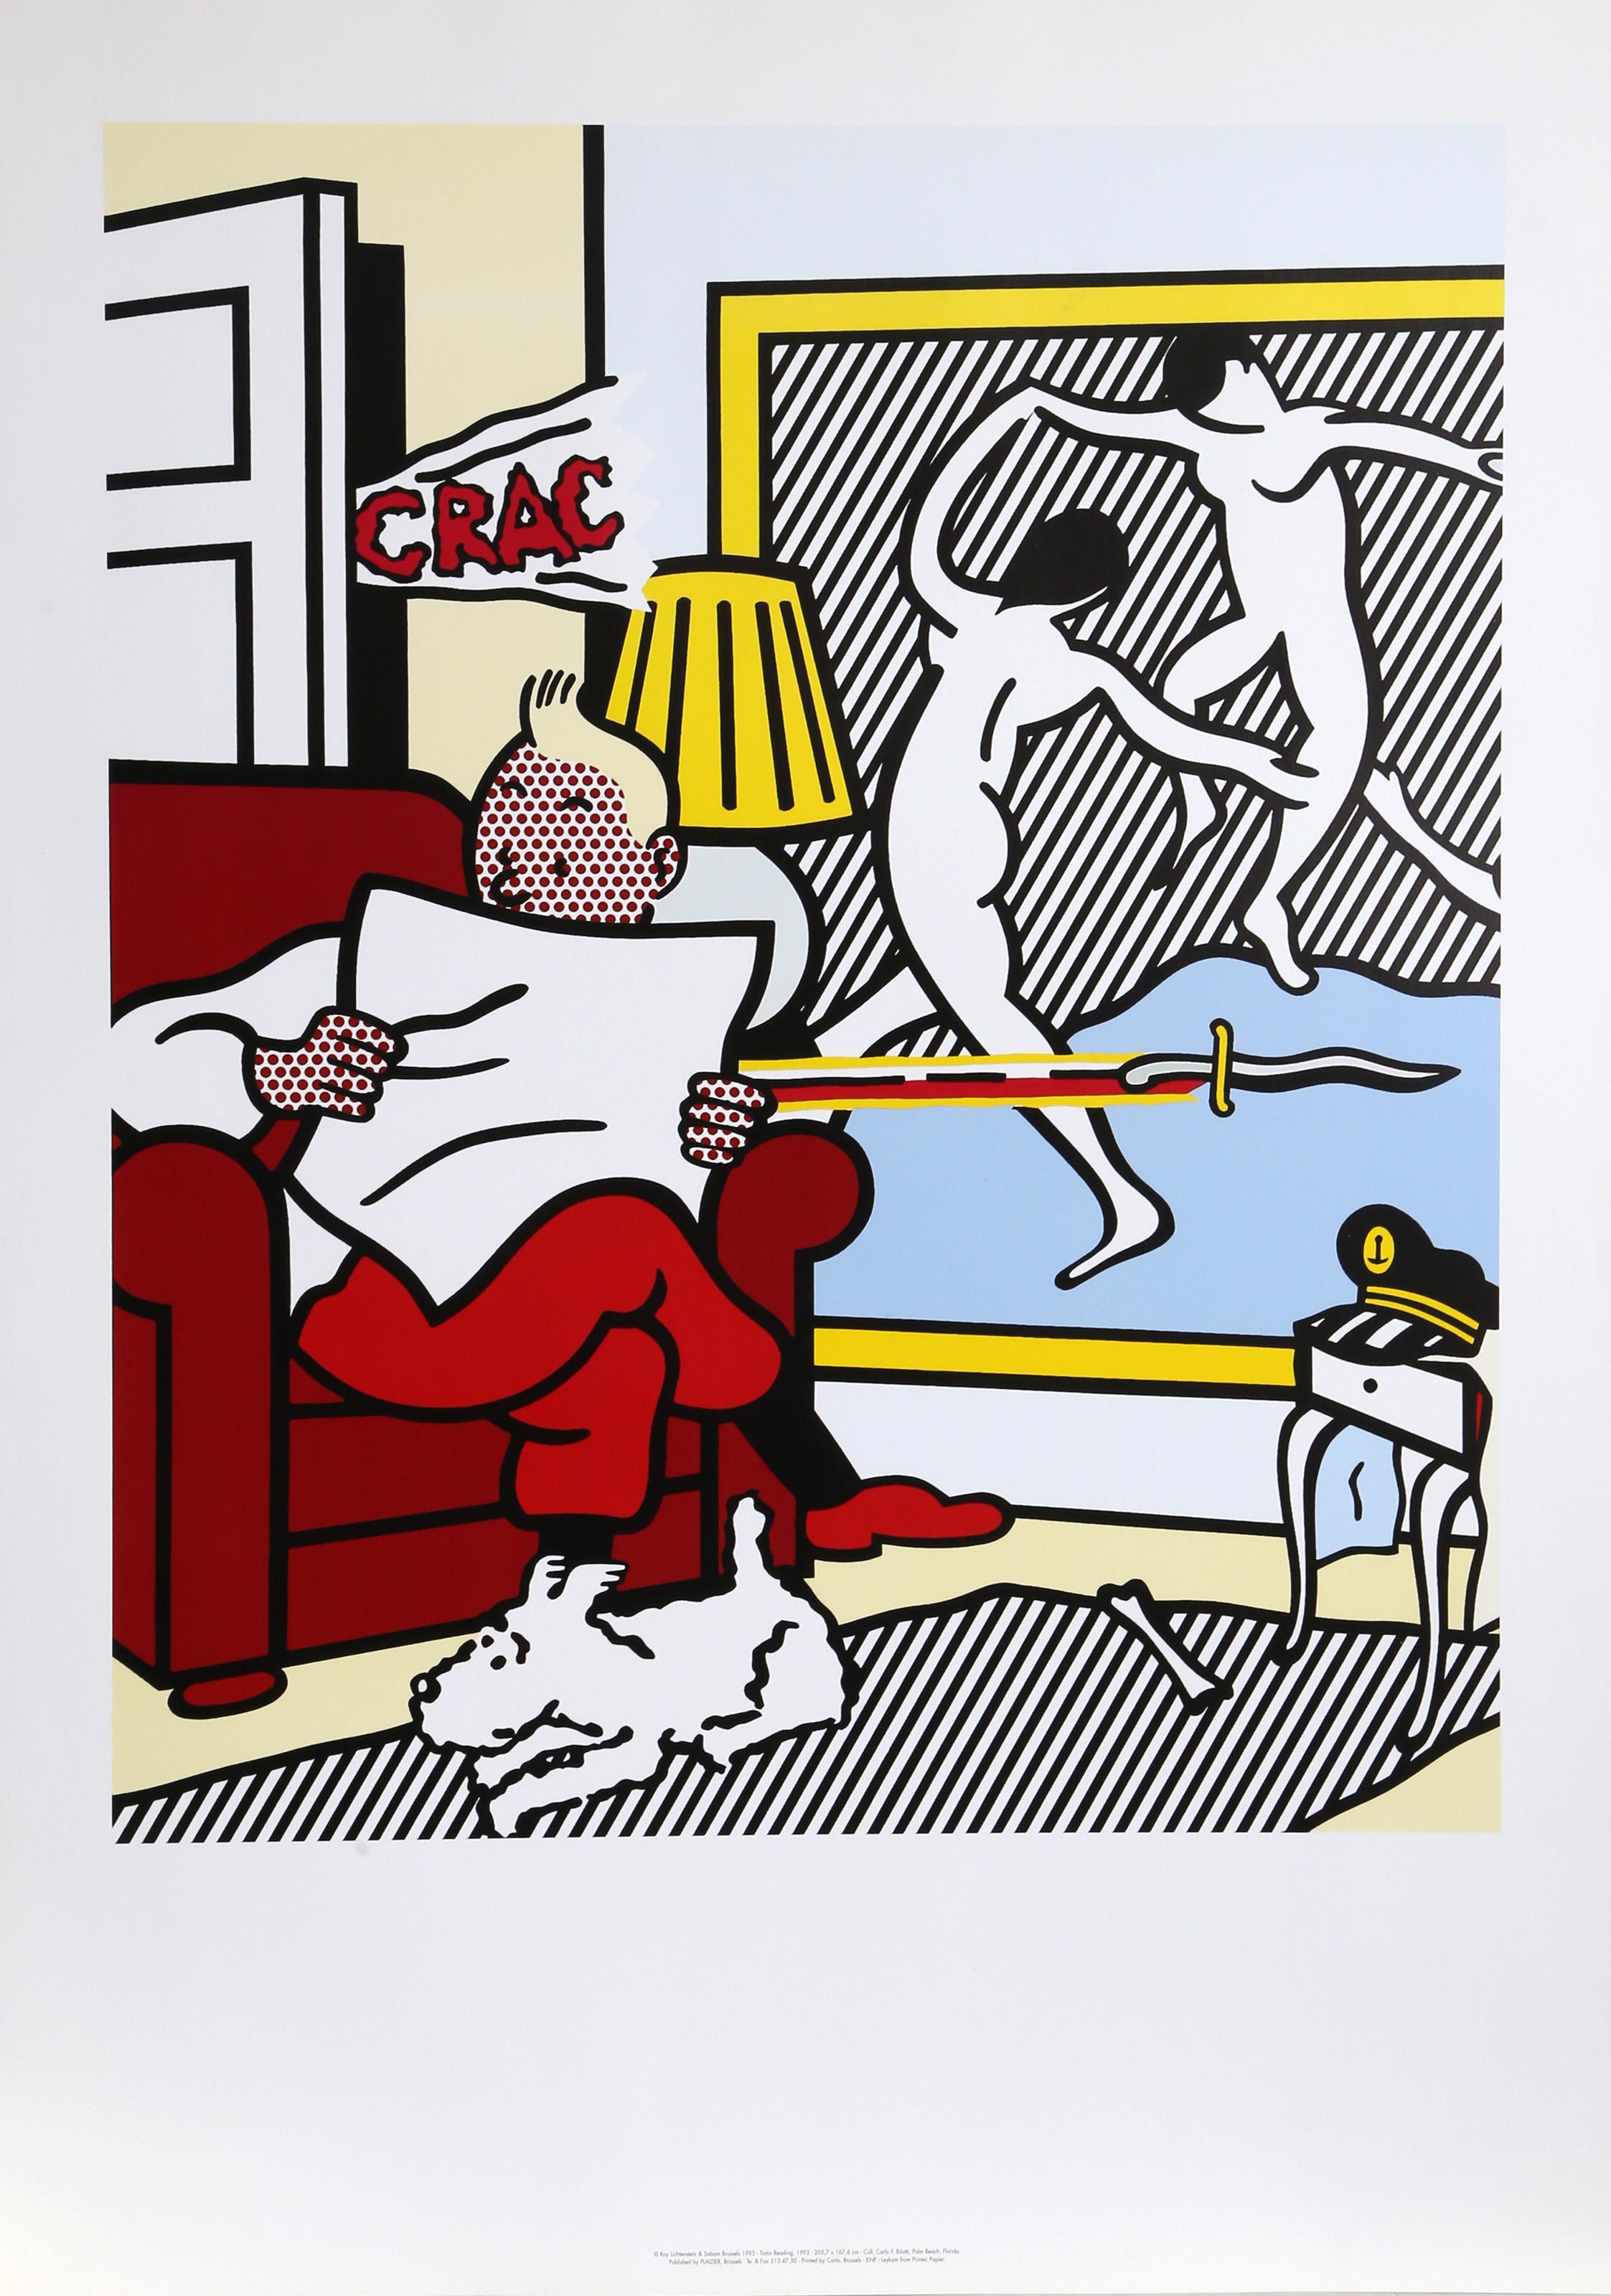 En 1993, Roy Lichtenstein a illustré la couverture du roman de Frédéric Tuten "Tintin dans le nouveau monde" avec son œuvre "Tintin lisant". Très représentative du style de l'artiste, elle montre Tintin assis dans une pièce en train de lire son